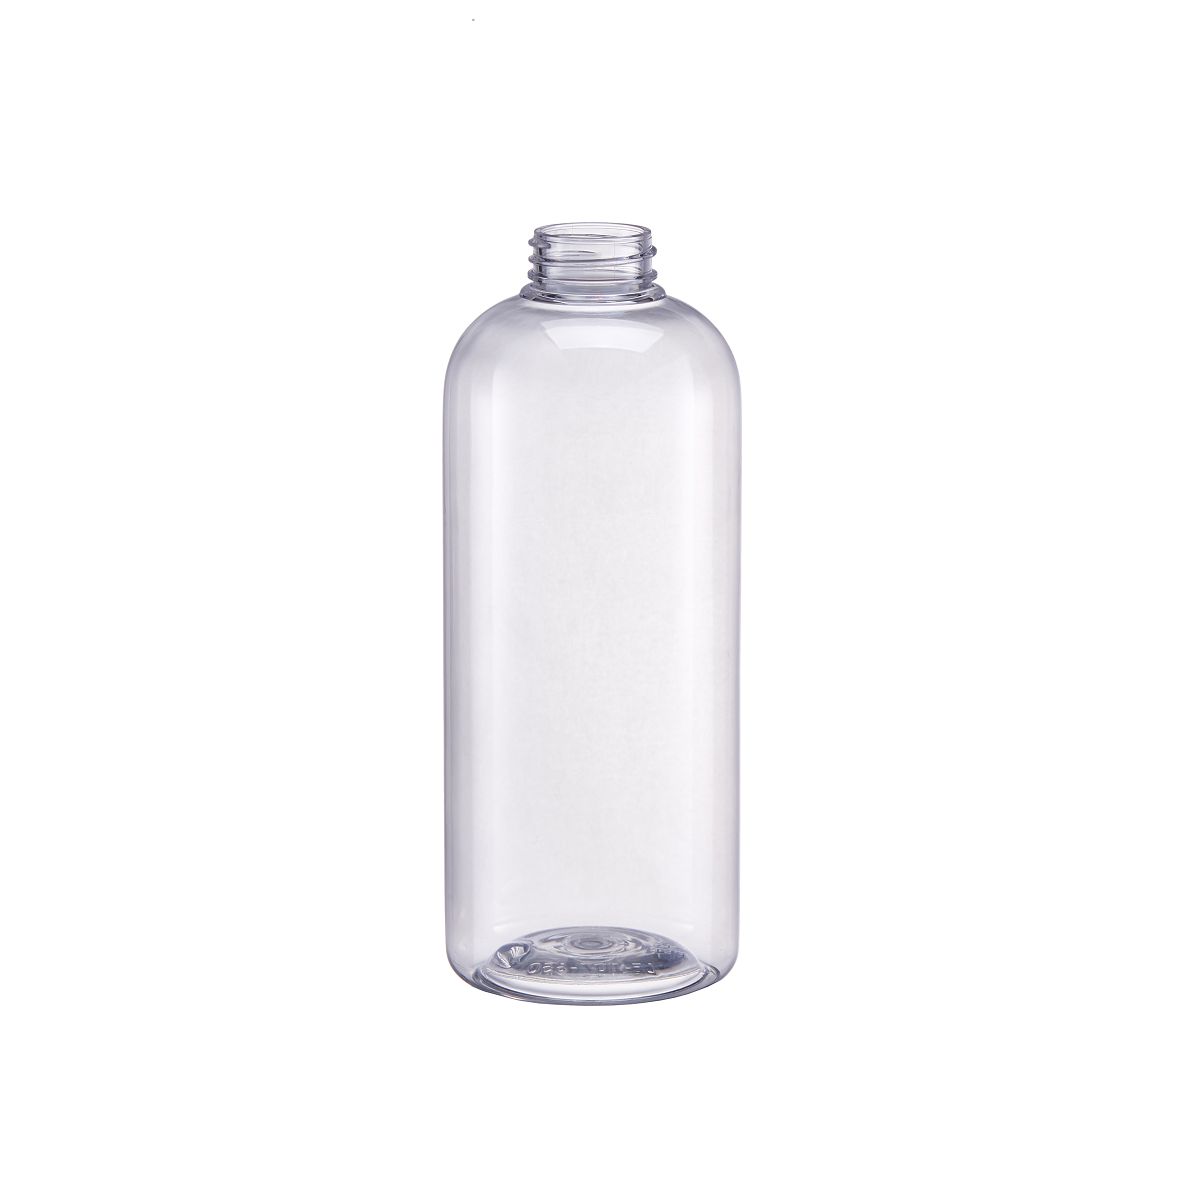 Dishwashing Bottle